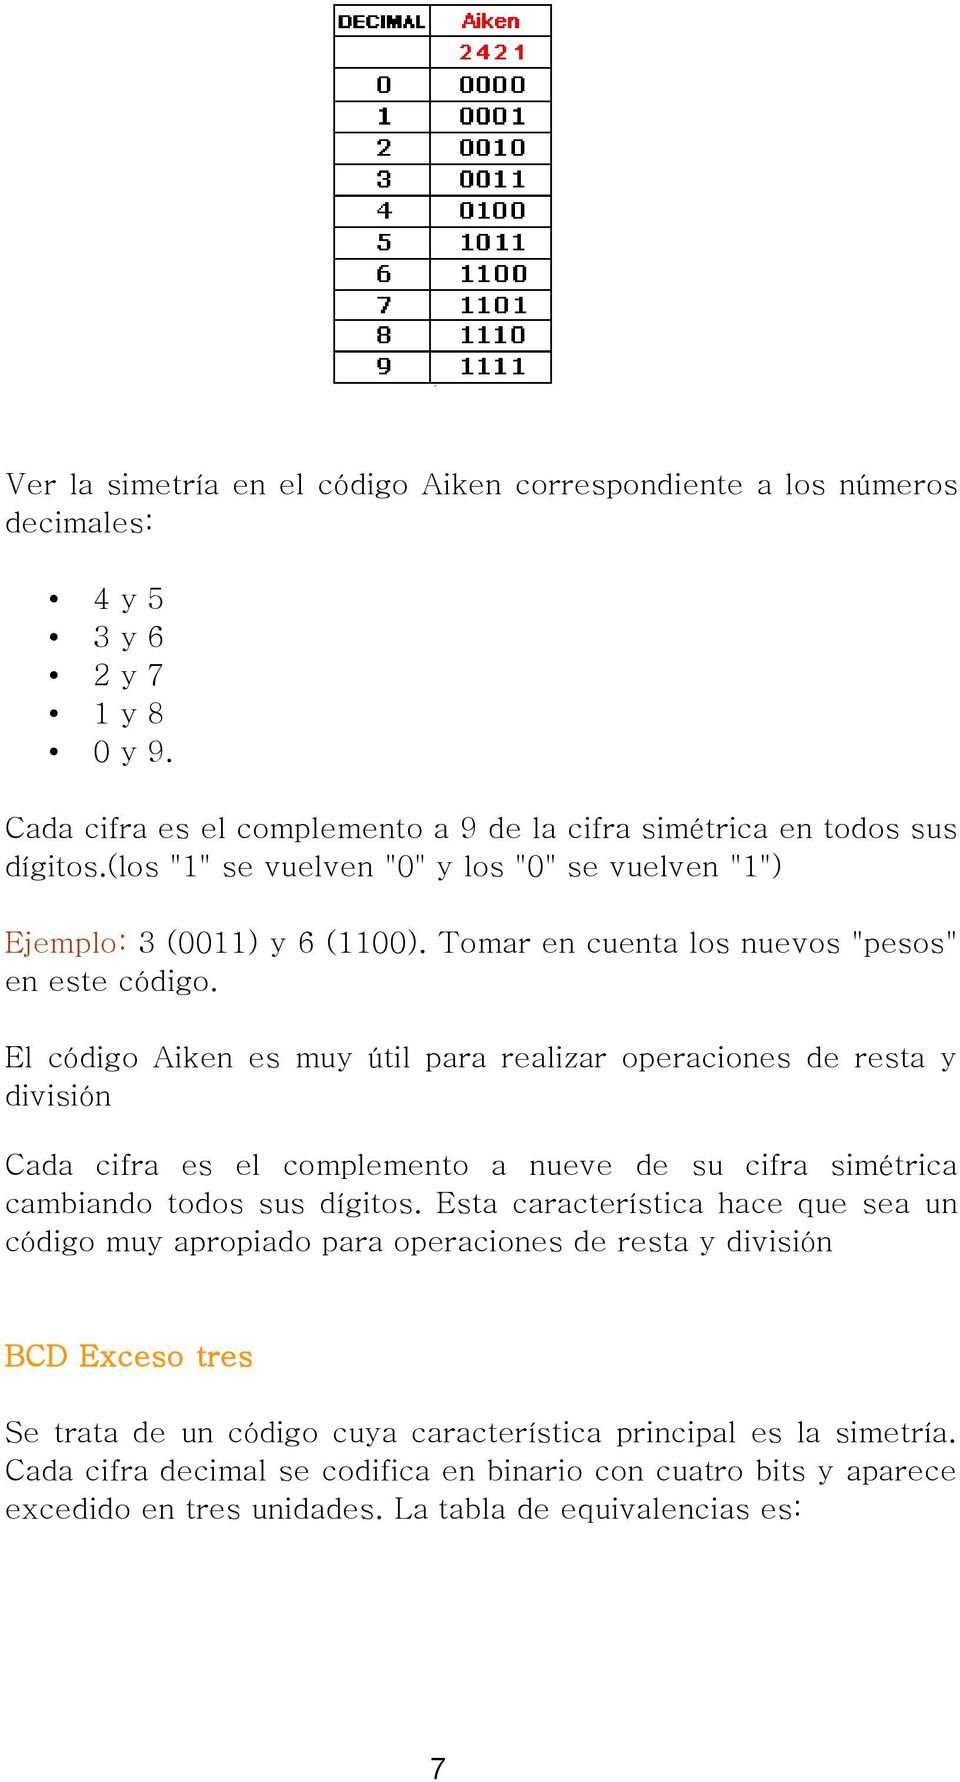 El código Aiken es muy útil para realizar operaciones de resta y división Cada cifra es el complemento a nueve de su cifra simétrica cambiando todos sus dígitos.